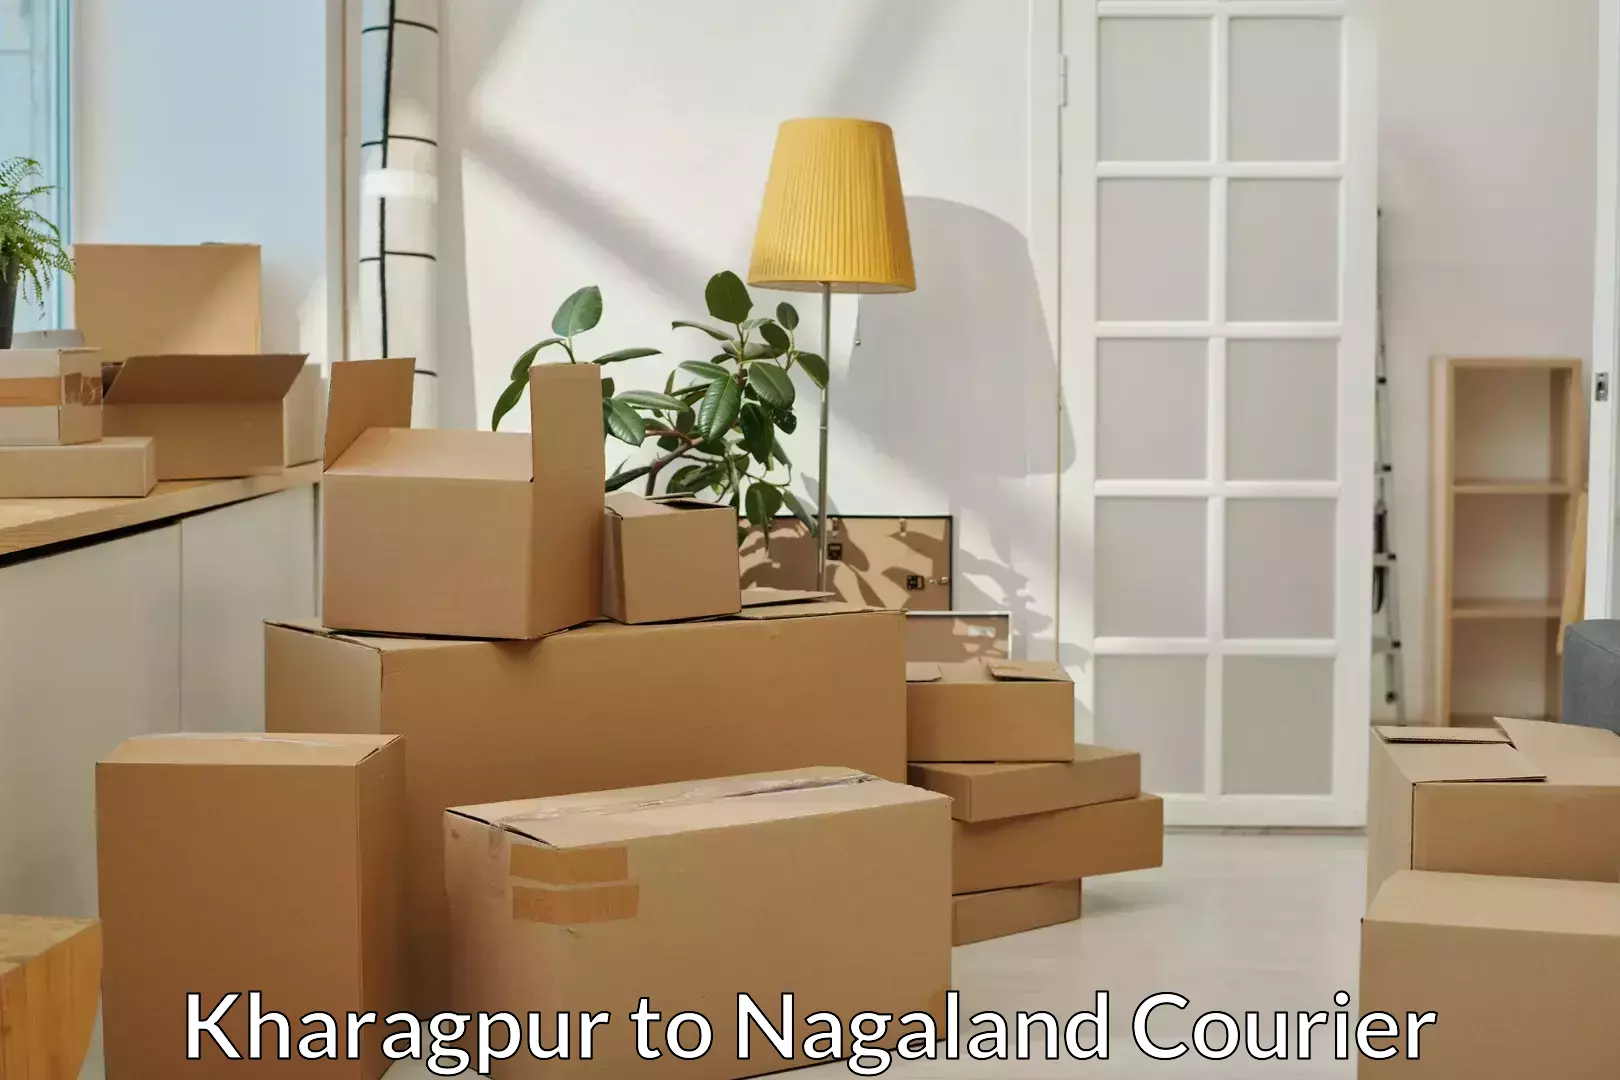 Professional home movers Kharagpur to Kohima